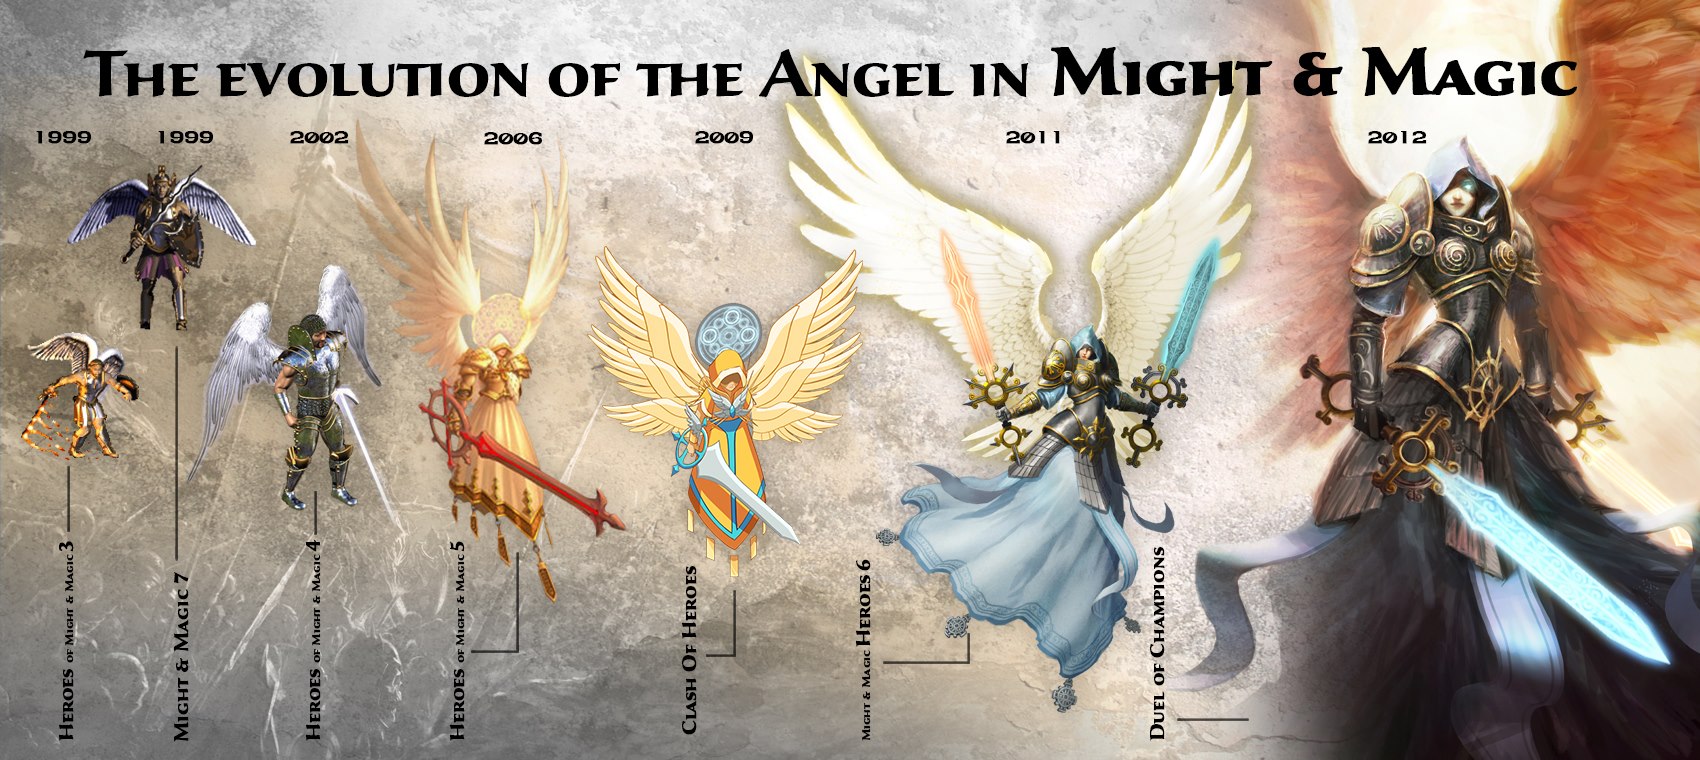 Герои меча и магии 6 ангел